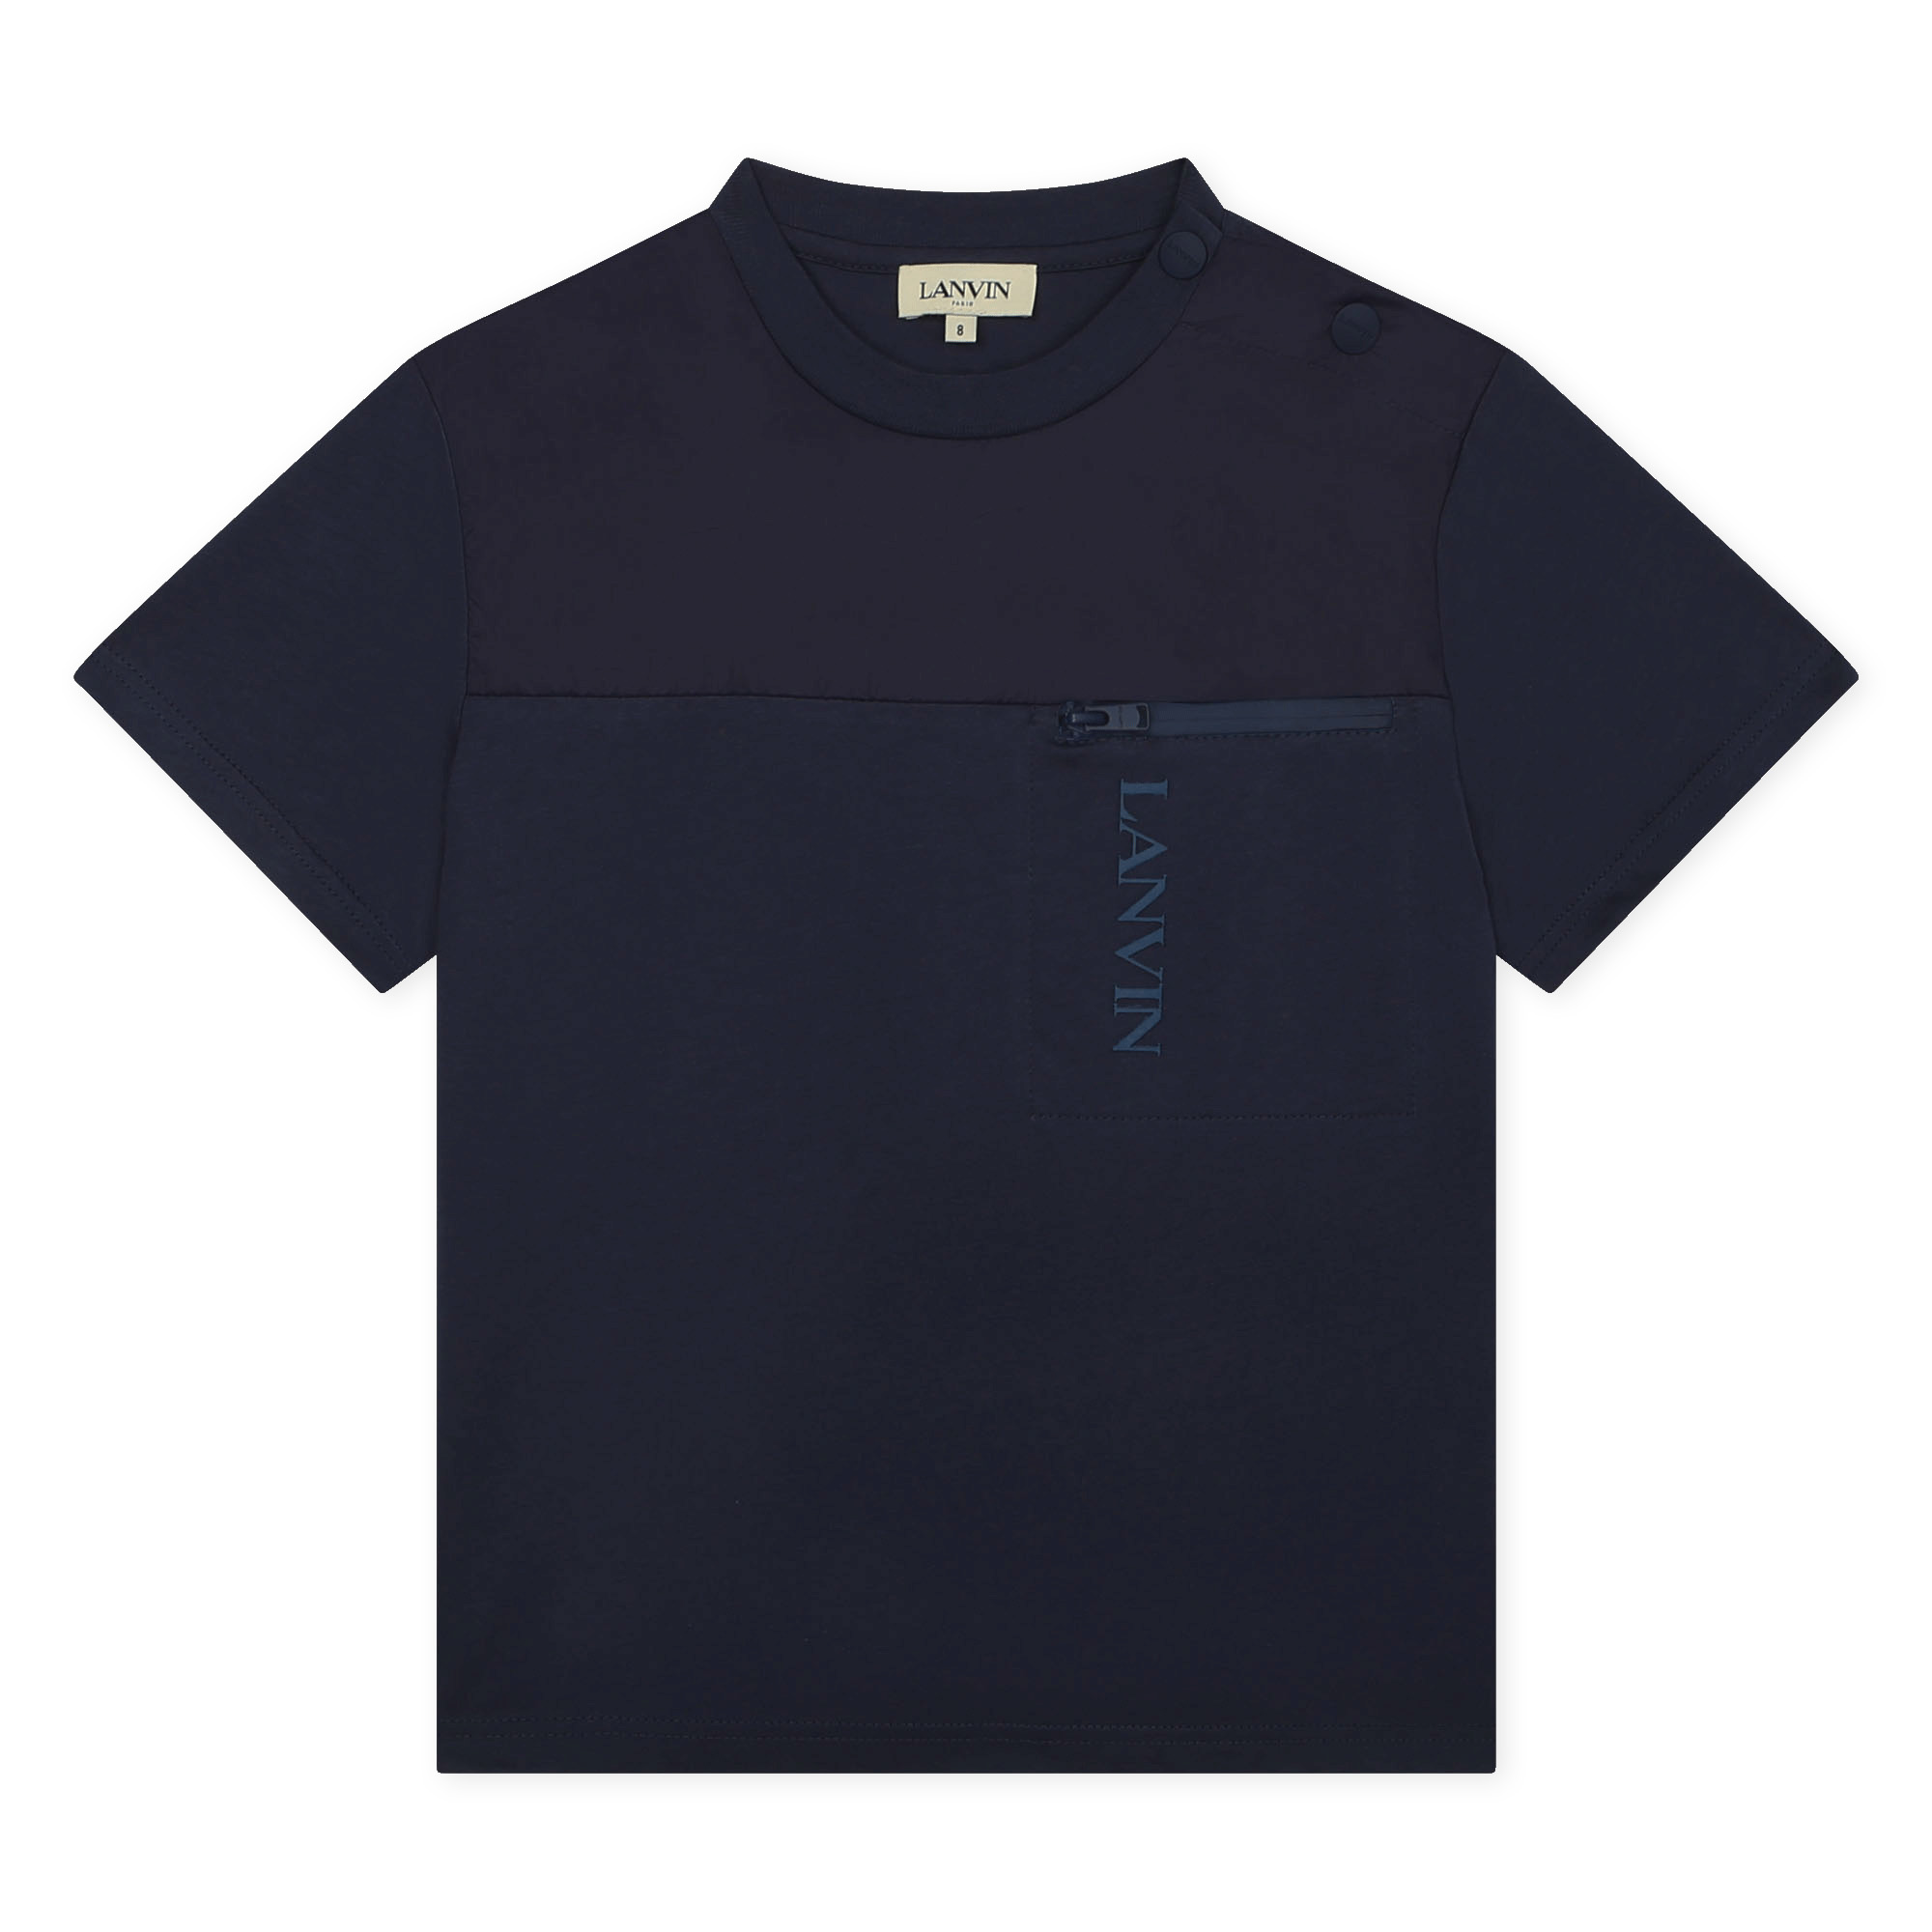 Baumwoll-T-Shirt mit Tasche LANVIN Für JUNGE